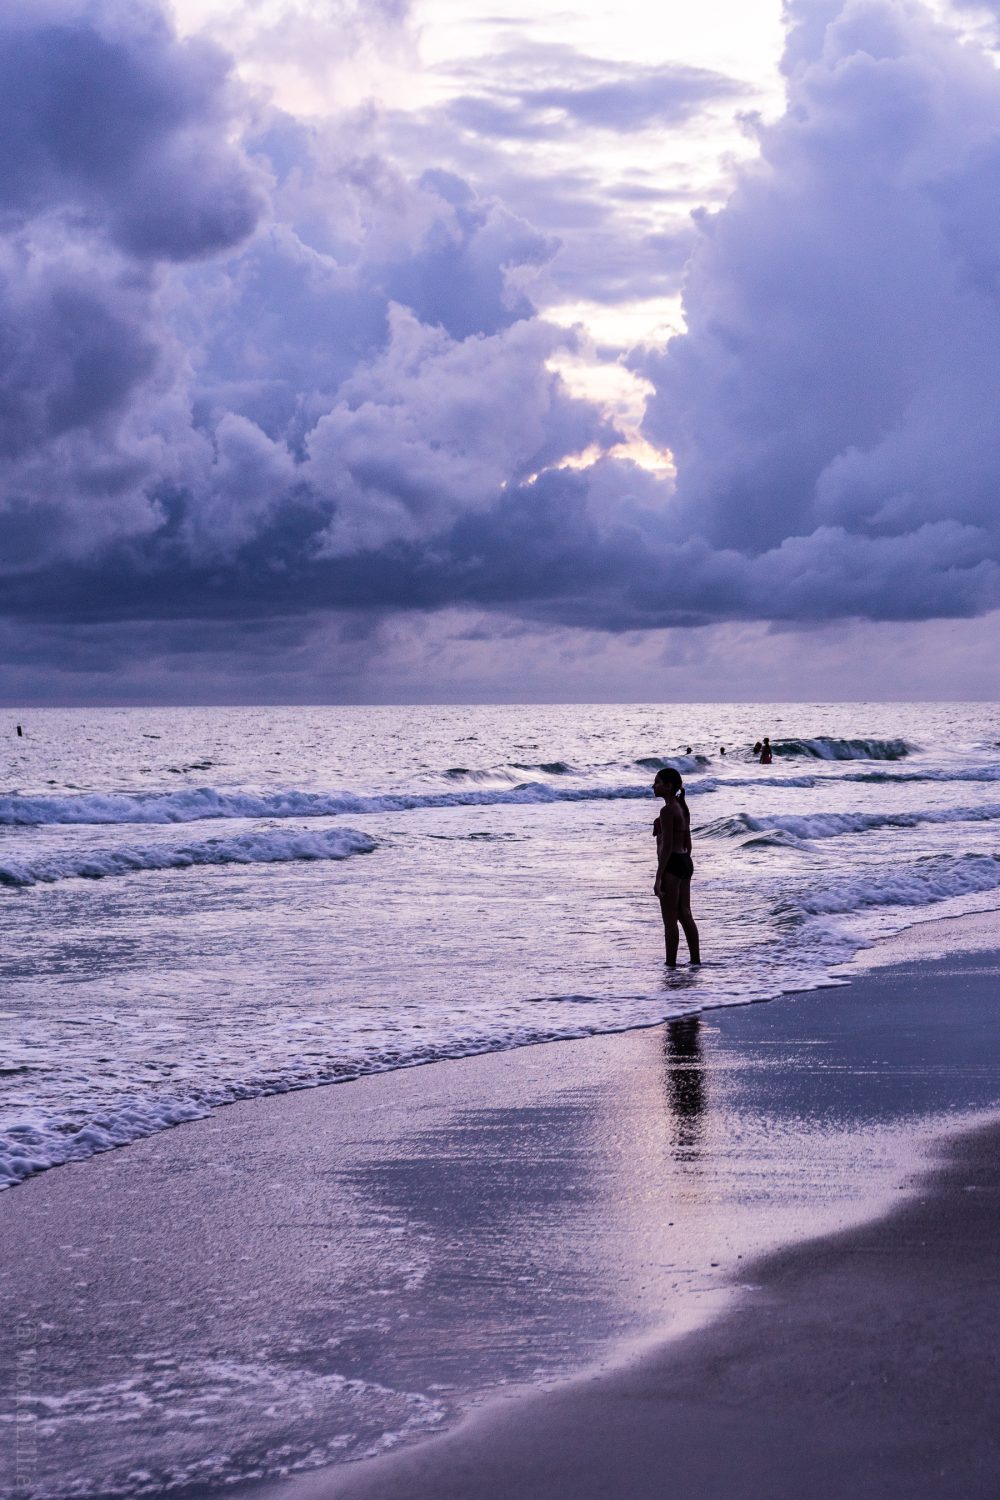 A moody beach silhouette.